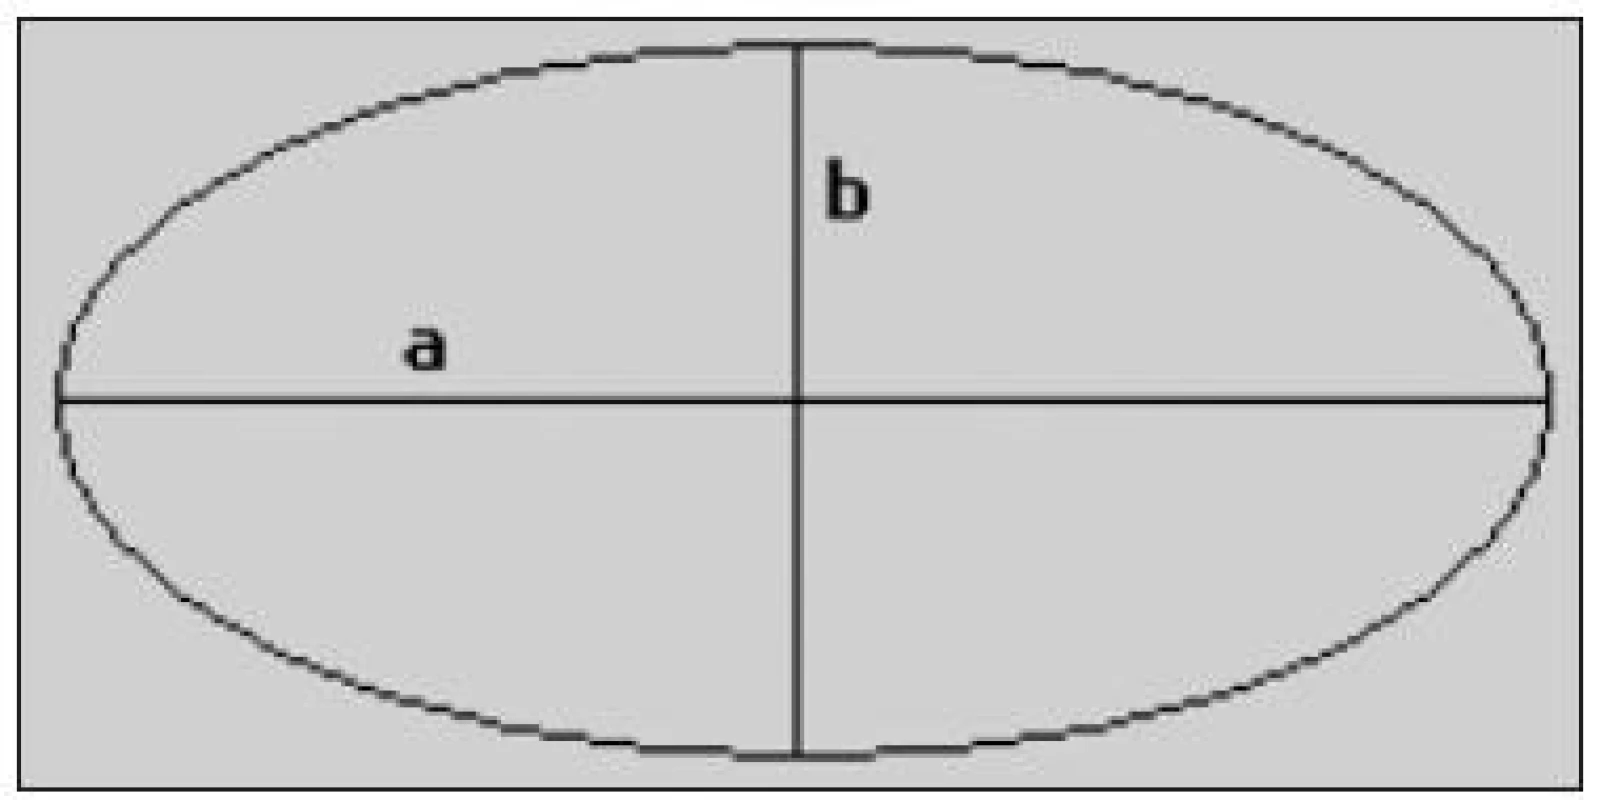 Obecný tvar elipsy (a – hlavní poloosa, b – vedlejší poloosa)
zdroj: http://antisprti.wz.cz/matika/index.php?stranka=elipsa.php&amp;otevreno=elipsa [cit. 21-07-2011]